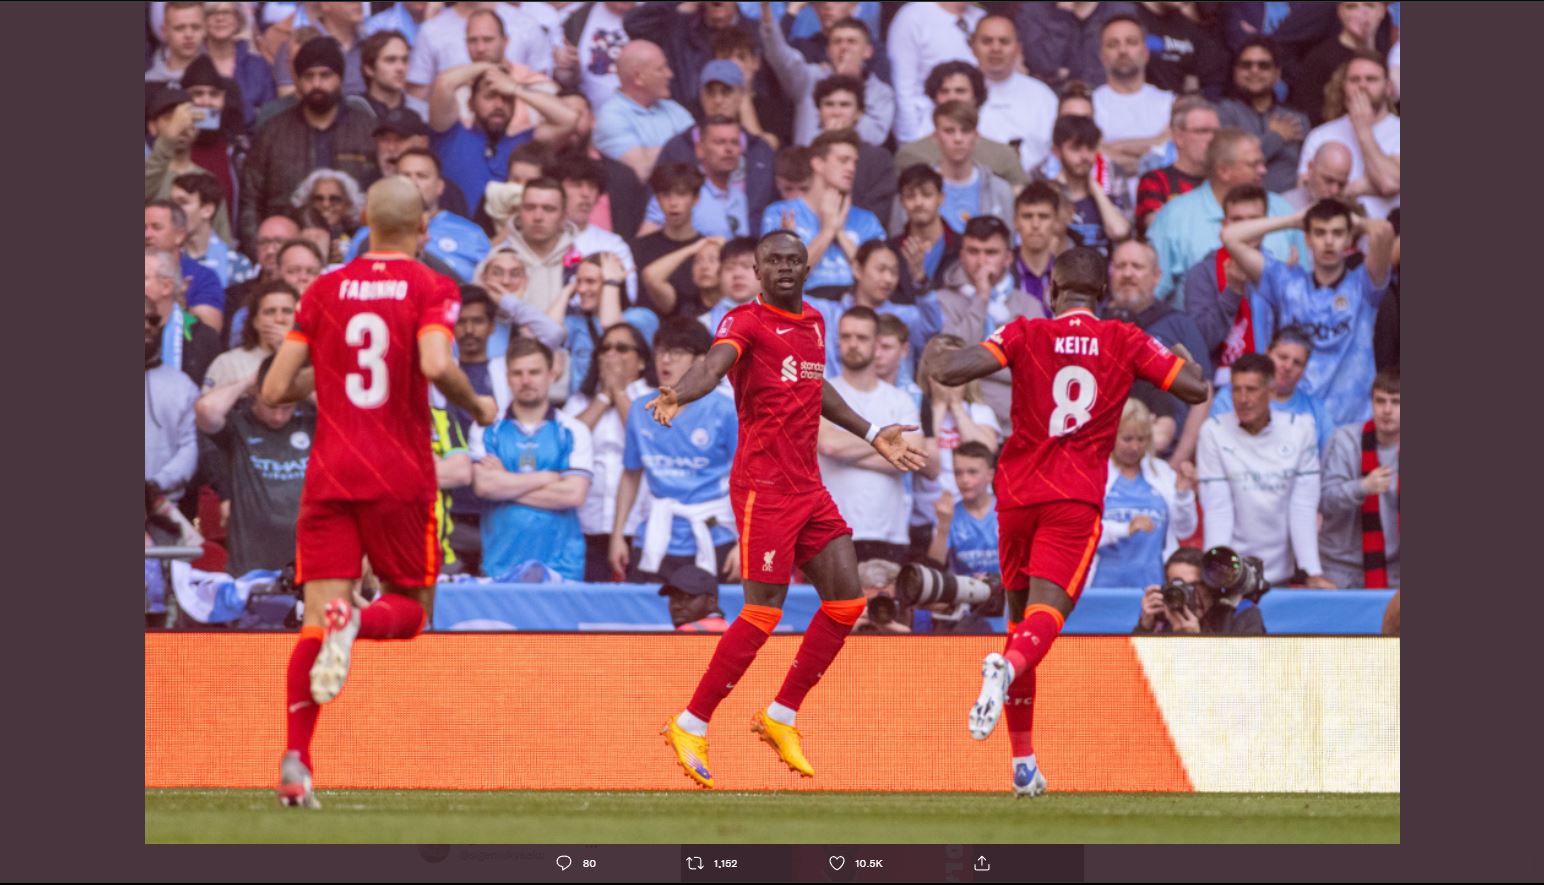 Bawa Liverpool ke Final Piala FA, Sadio Mane Sebut sebagai Kemenangan Besar dan Spesial